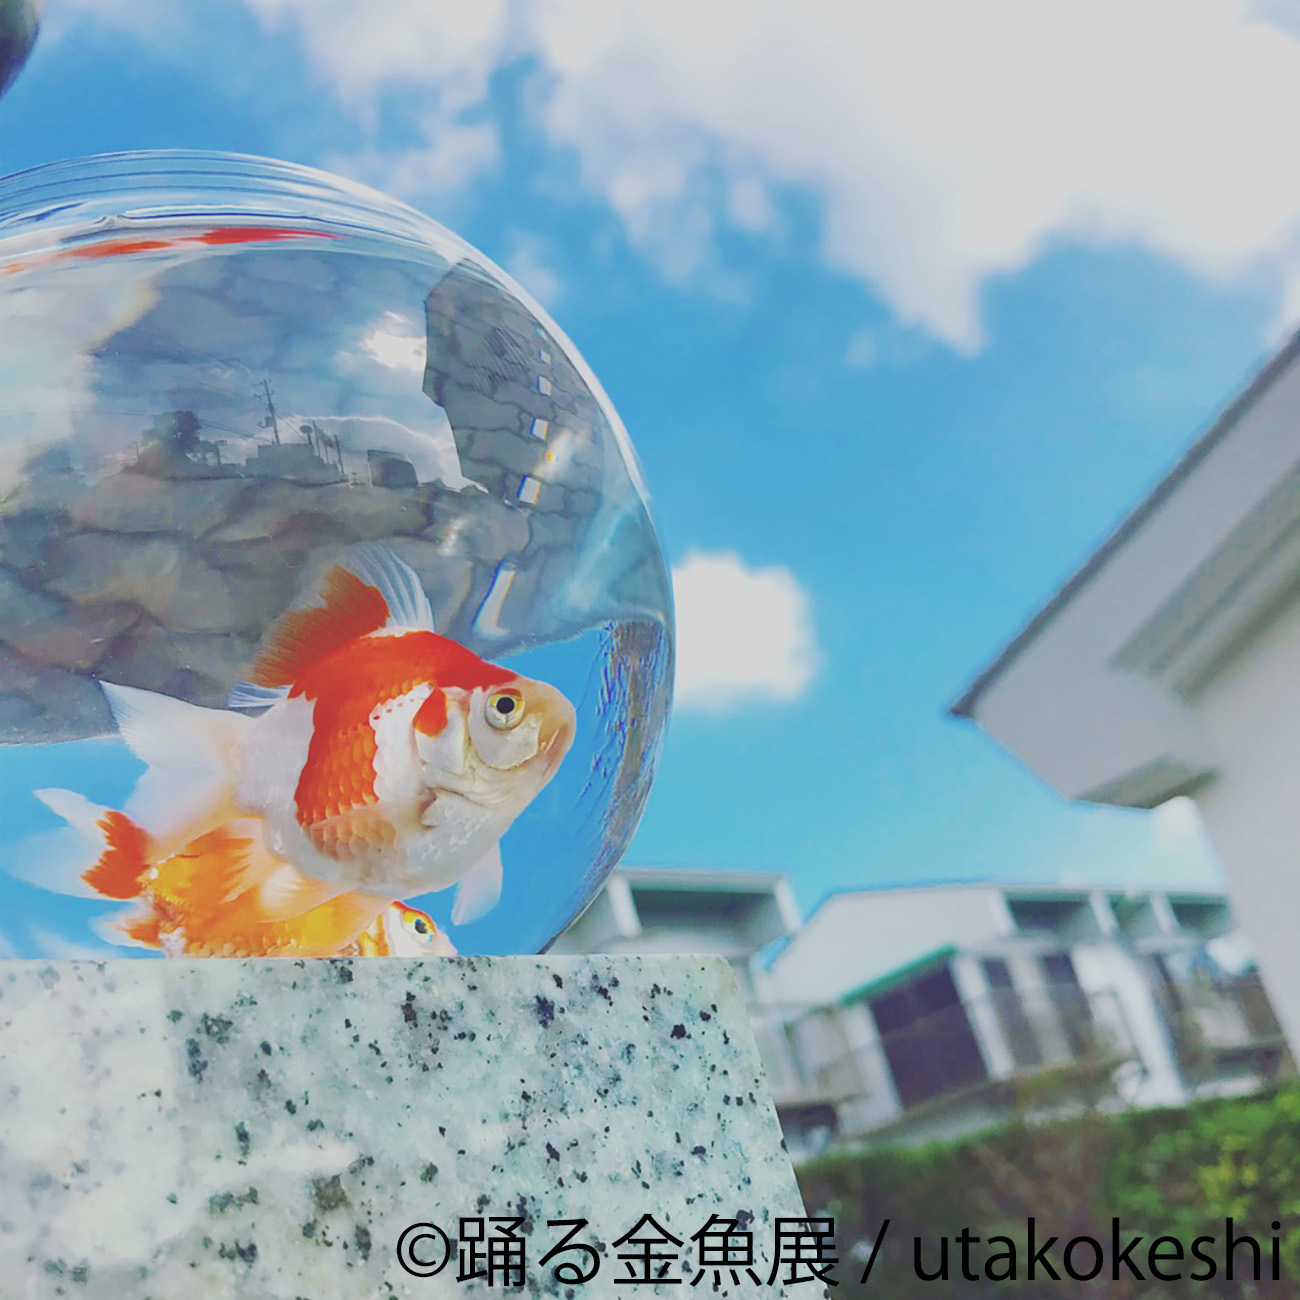 画像 金魚の写真 イラスト グッズを集めた 踊る金魚展 東京と名古屋で開催 の画像3 6 Spice エンタメ特化型情報メディア スパイス